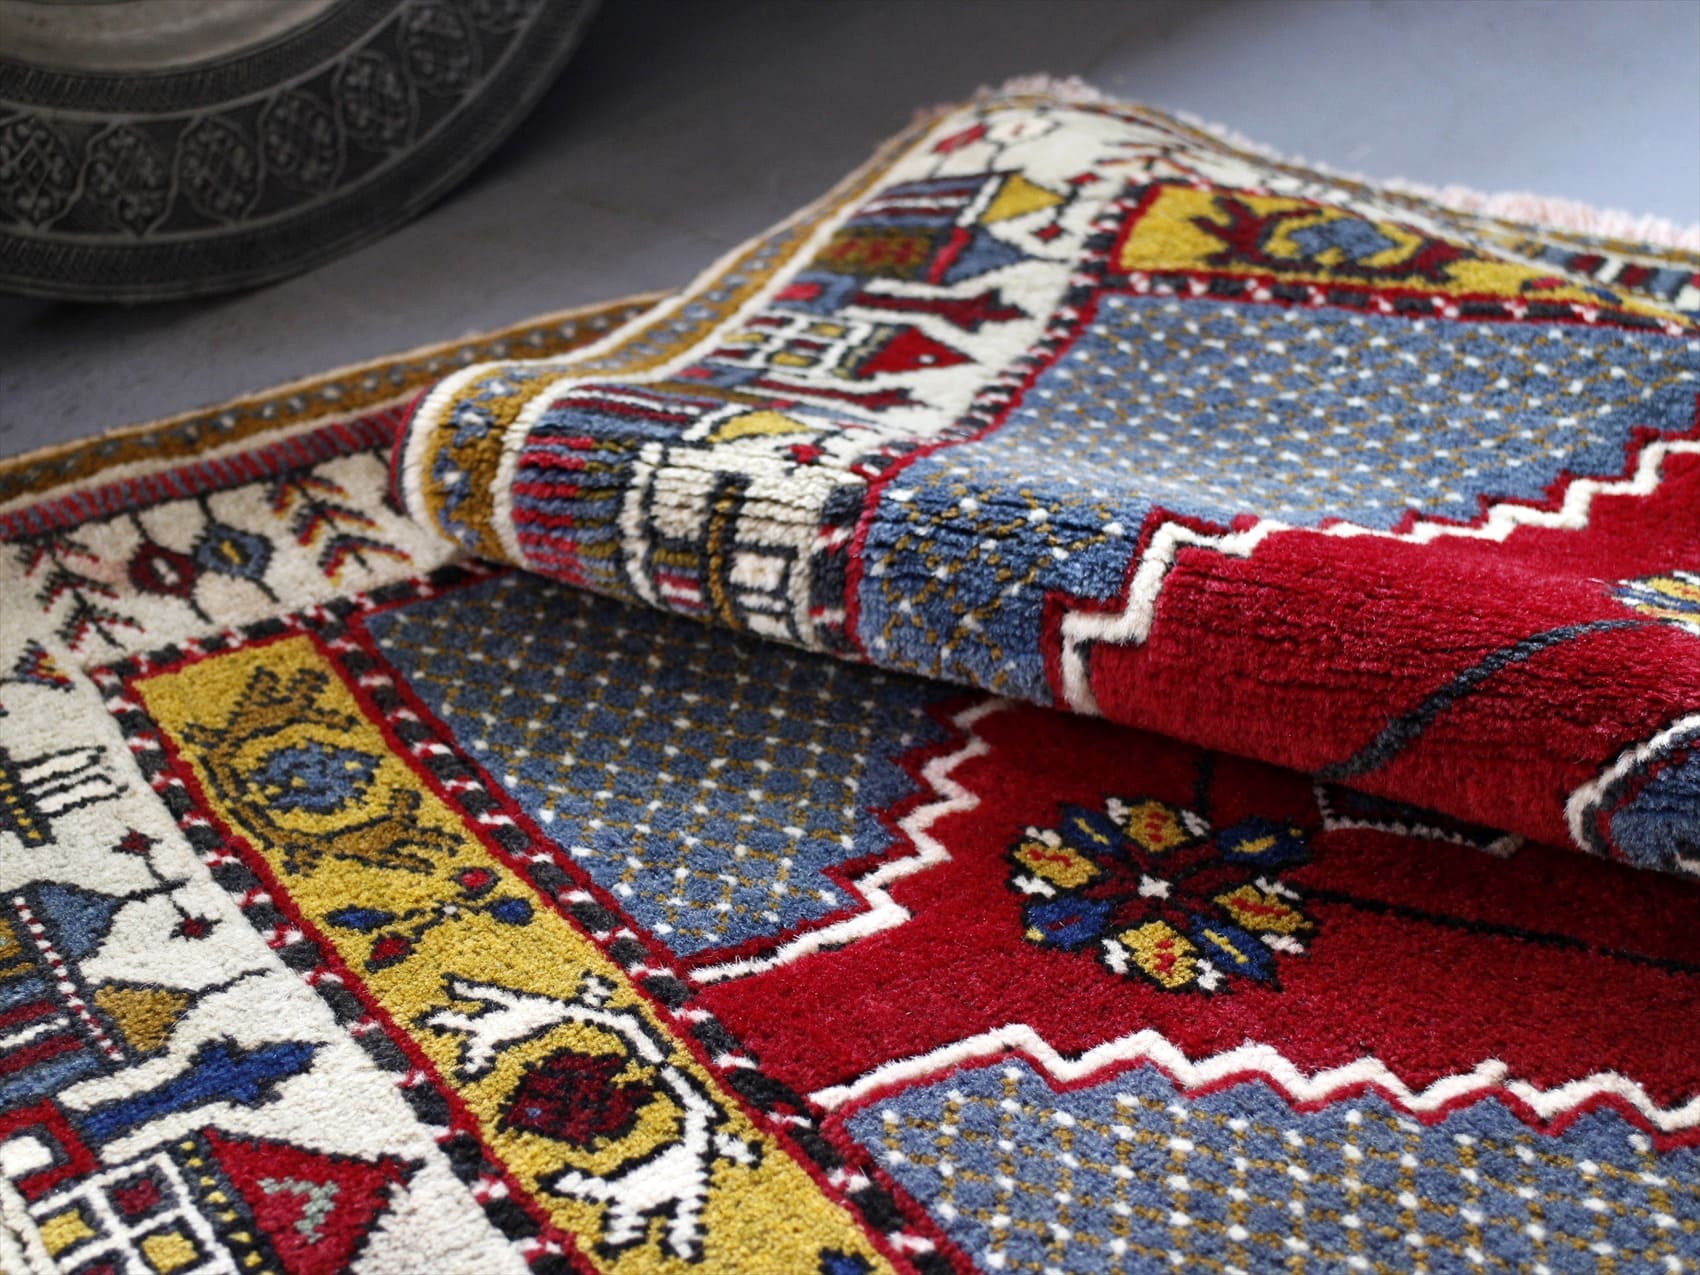 オールドカーペット・カイセリ・ヤヒヤル・トルコ手織り絨毯134×81cm 赤のメダリオンと町の風景